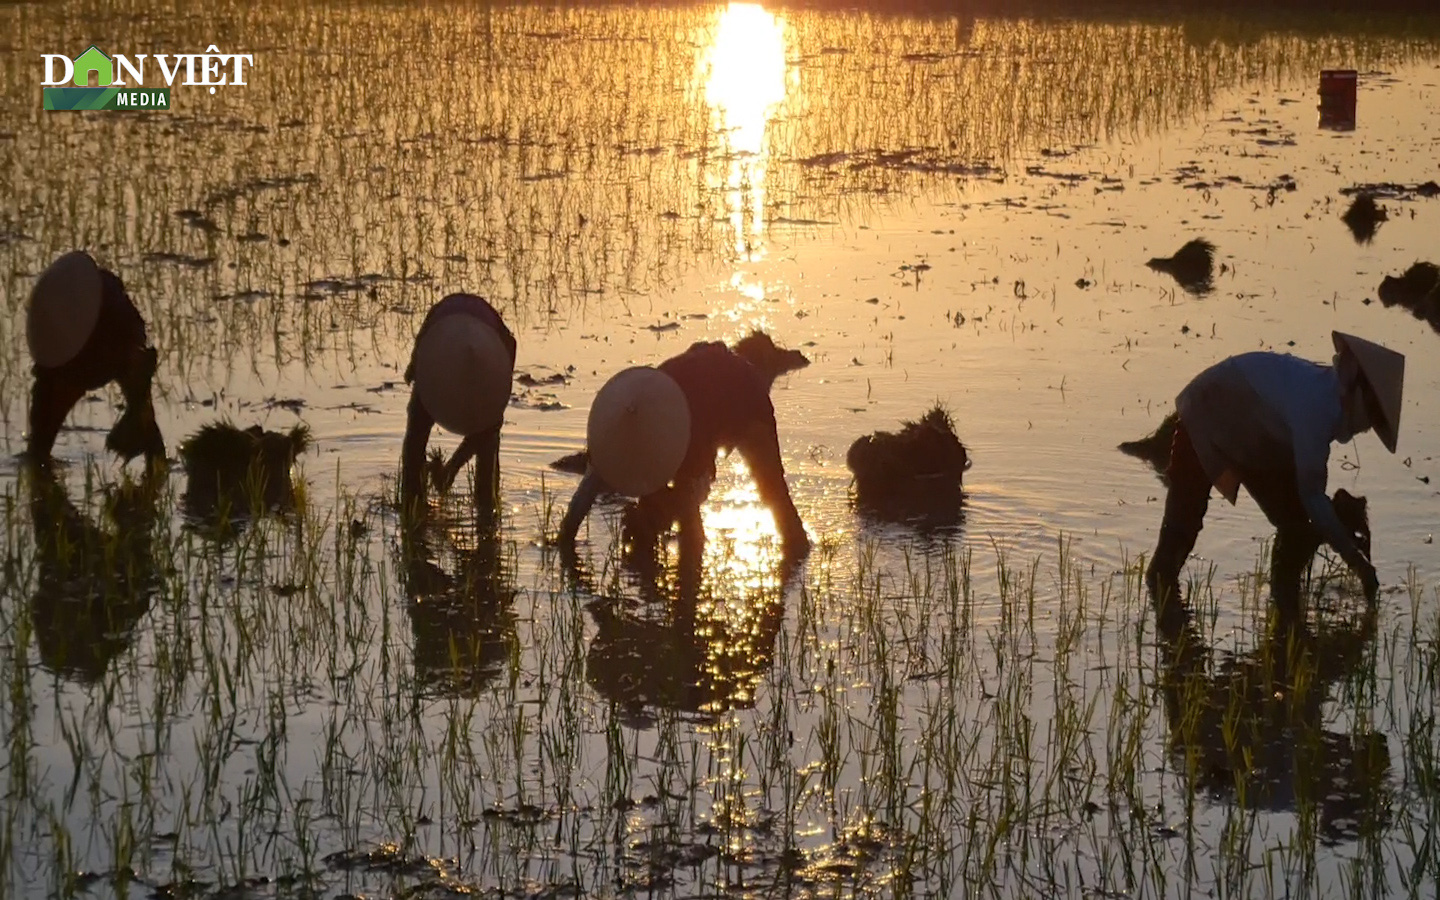 Nắng nóng "cua ngoi lên bờ", nông dân Hà Nội tìm cách chạy nắng, cấy lúa